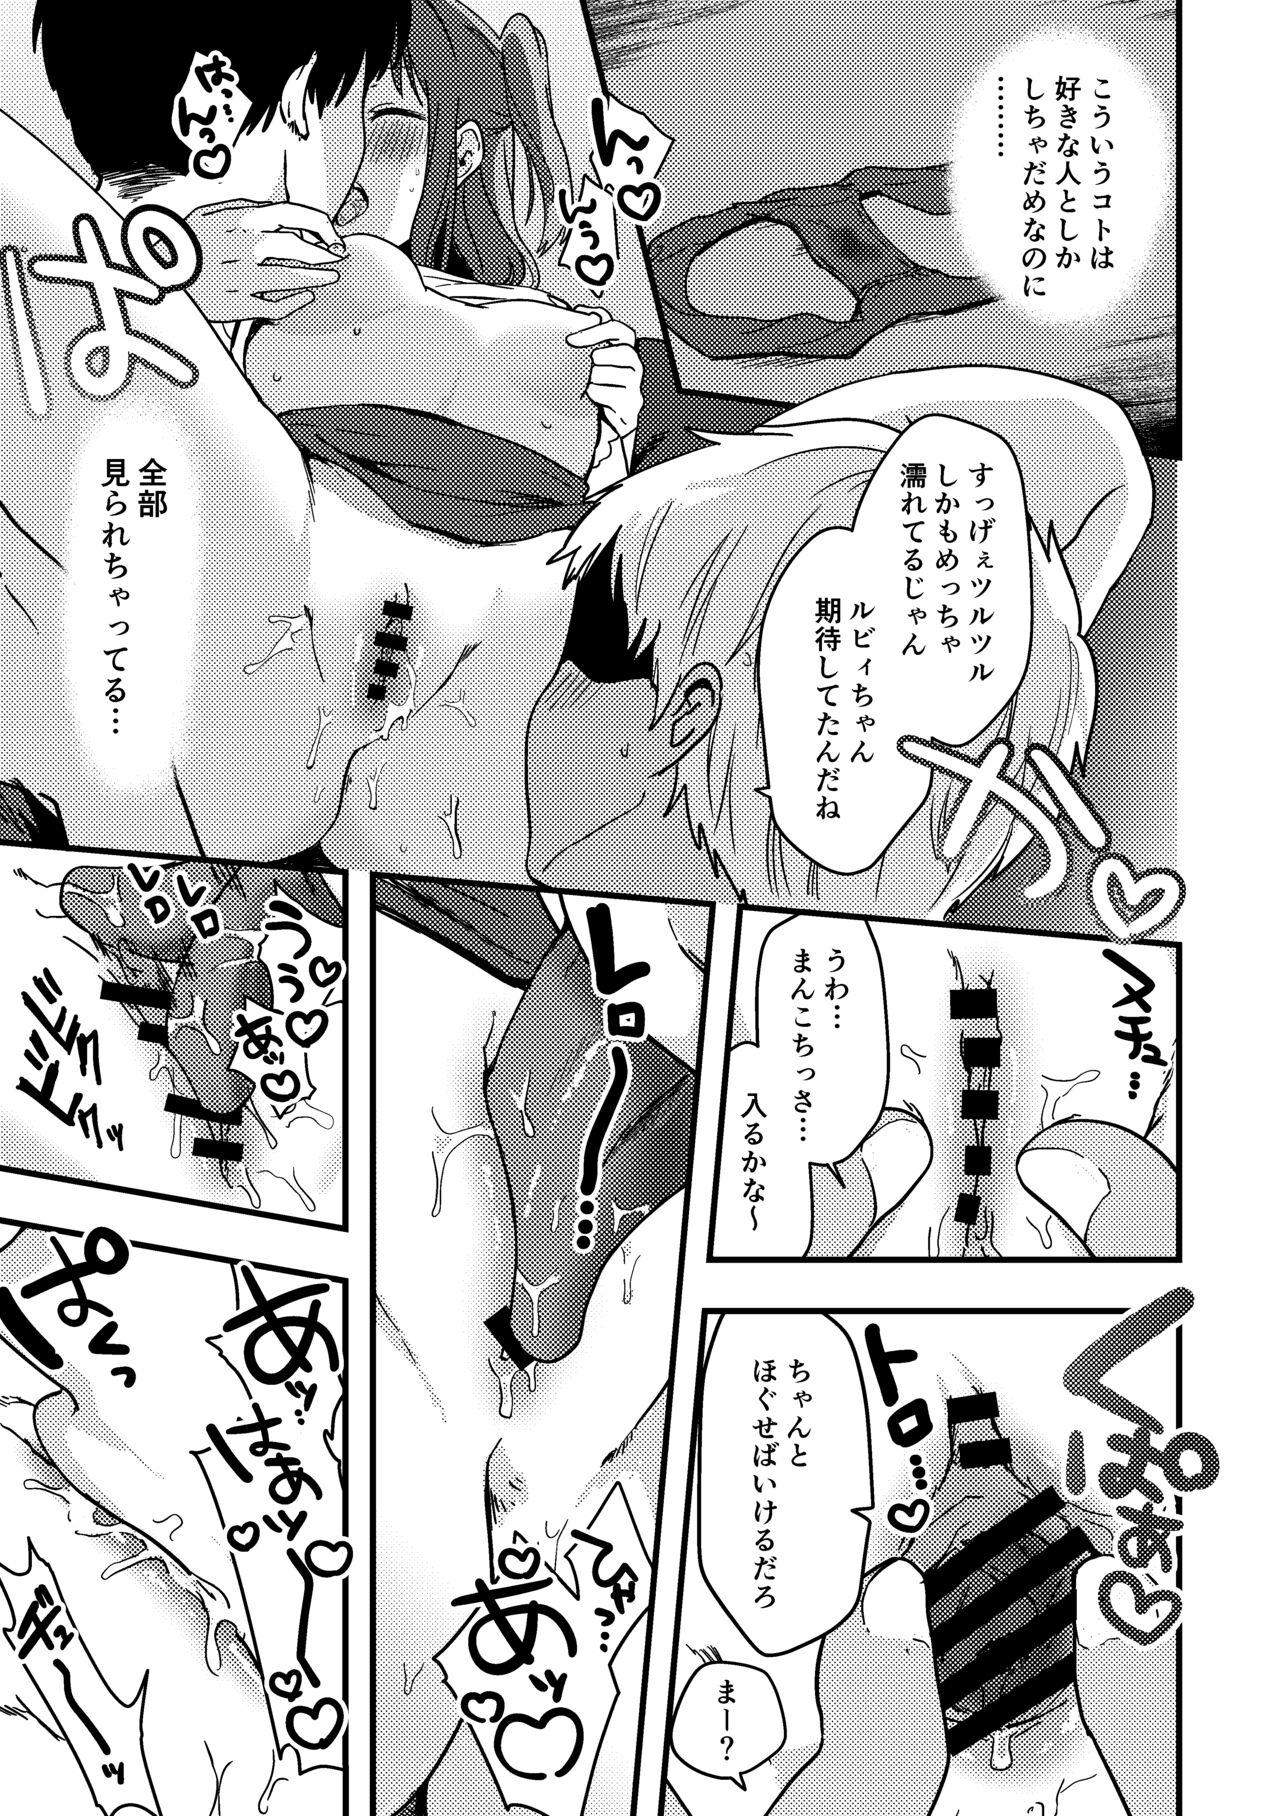 Ruby-chan no 10 Page Manga 2